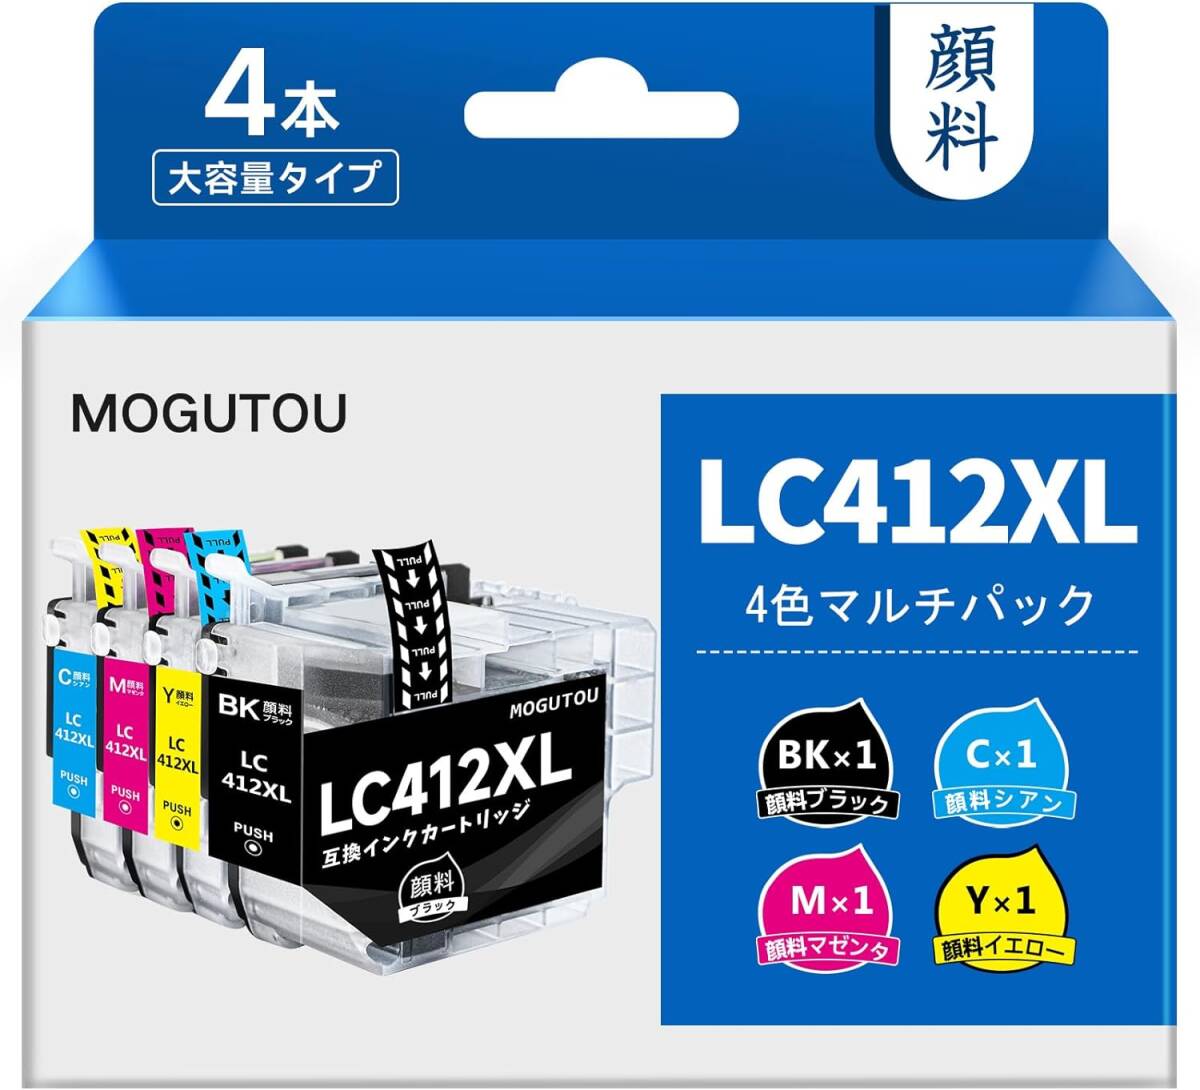 LC412XL LC412 ブラザー 対応 LC412XL-4PK 互換 Brother 用 インク LC412XLBK 4色パック LC412XLC LC412XLM LC412XLY MFC-J7100CDWの画像1